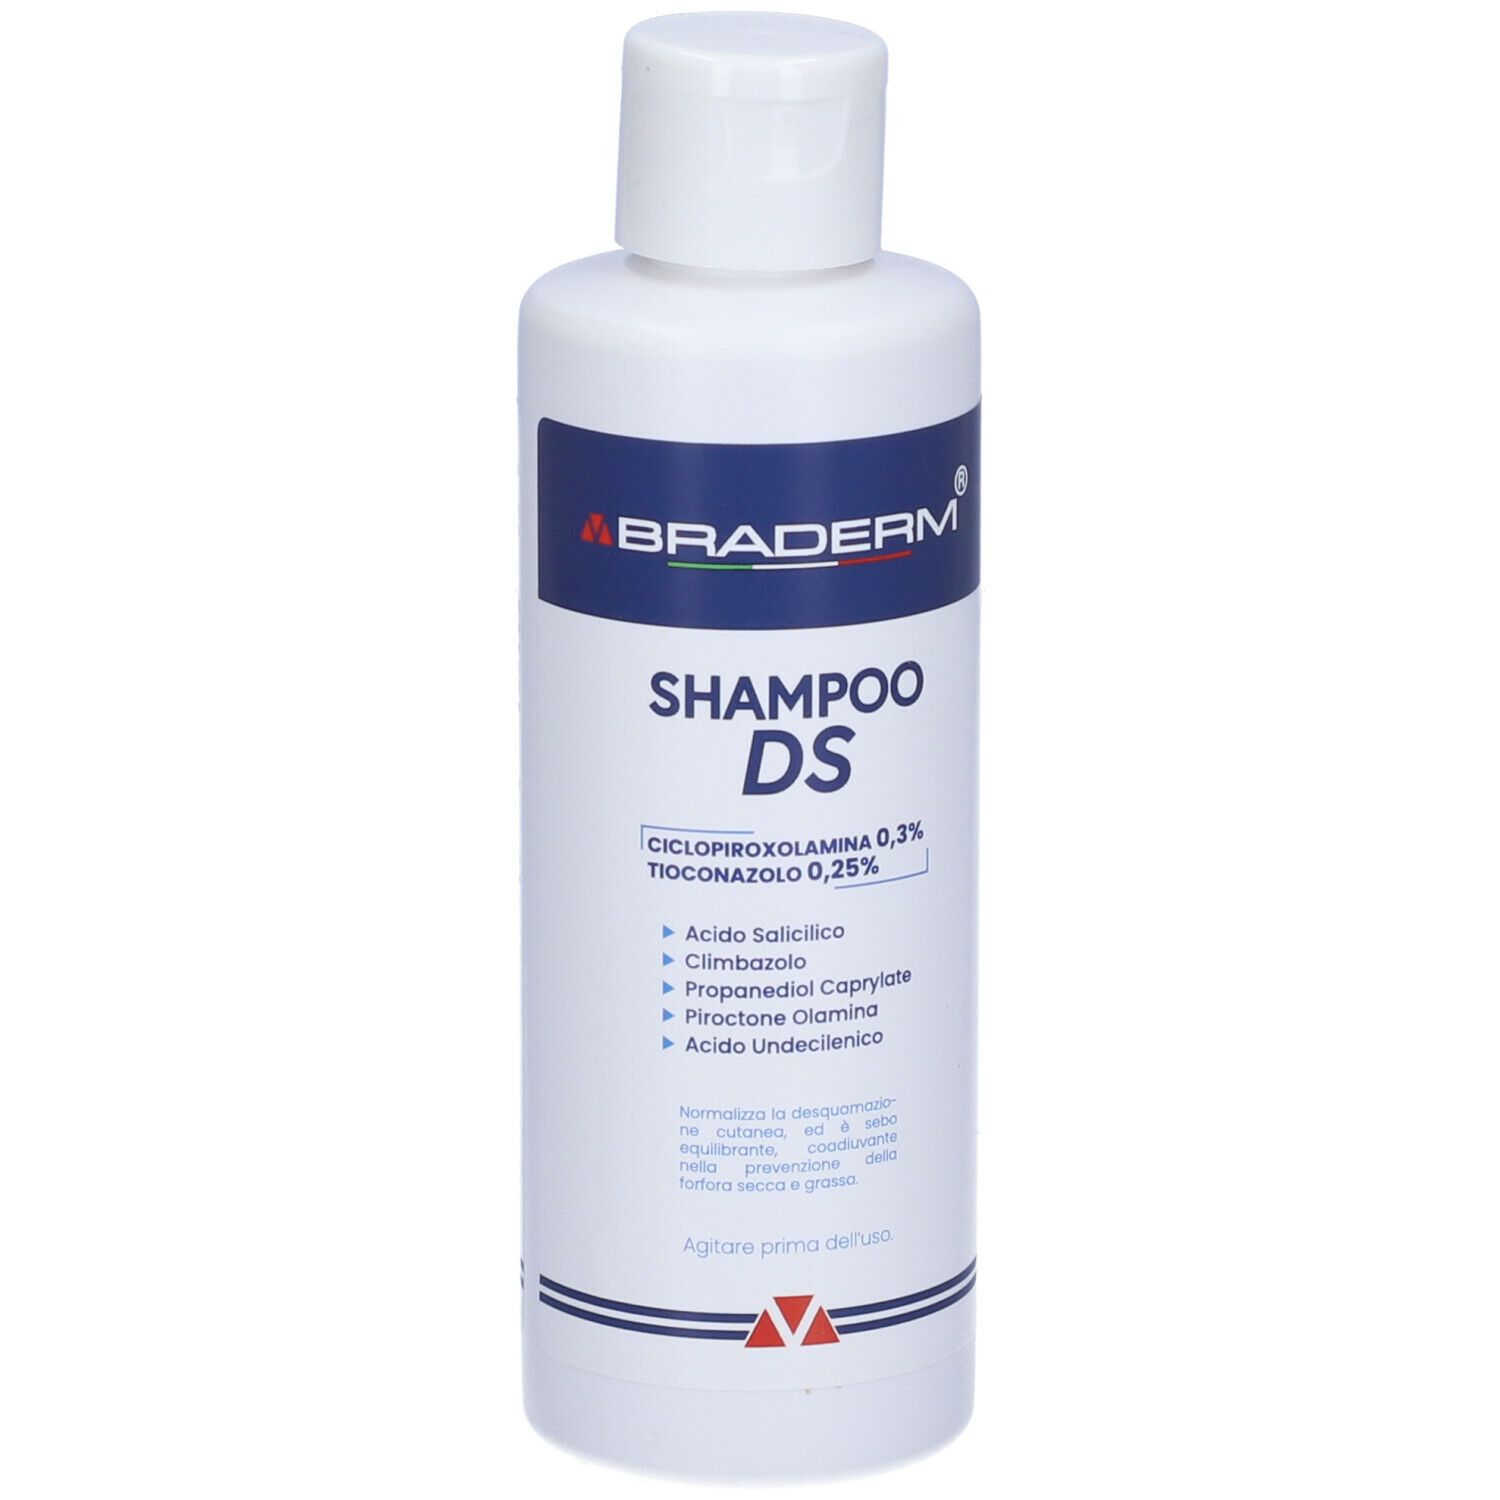 BRADERM® Shampoo Ds